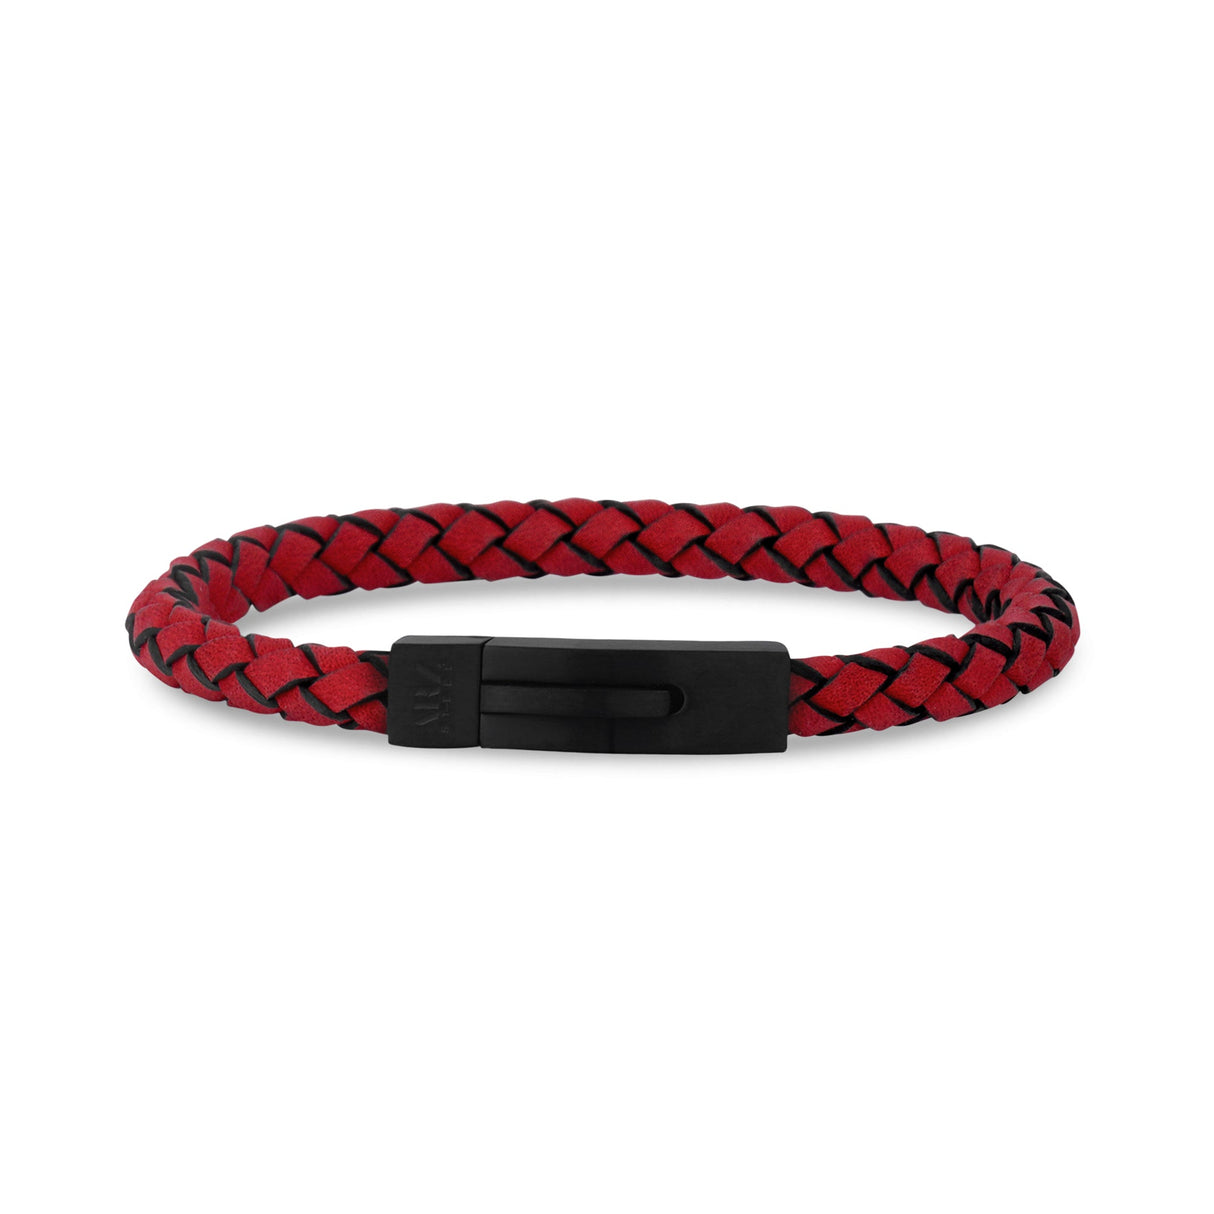 Mens Steel Leather Bracelets - 6mm Red Leather Engravable Bracelet